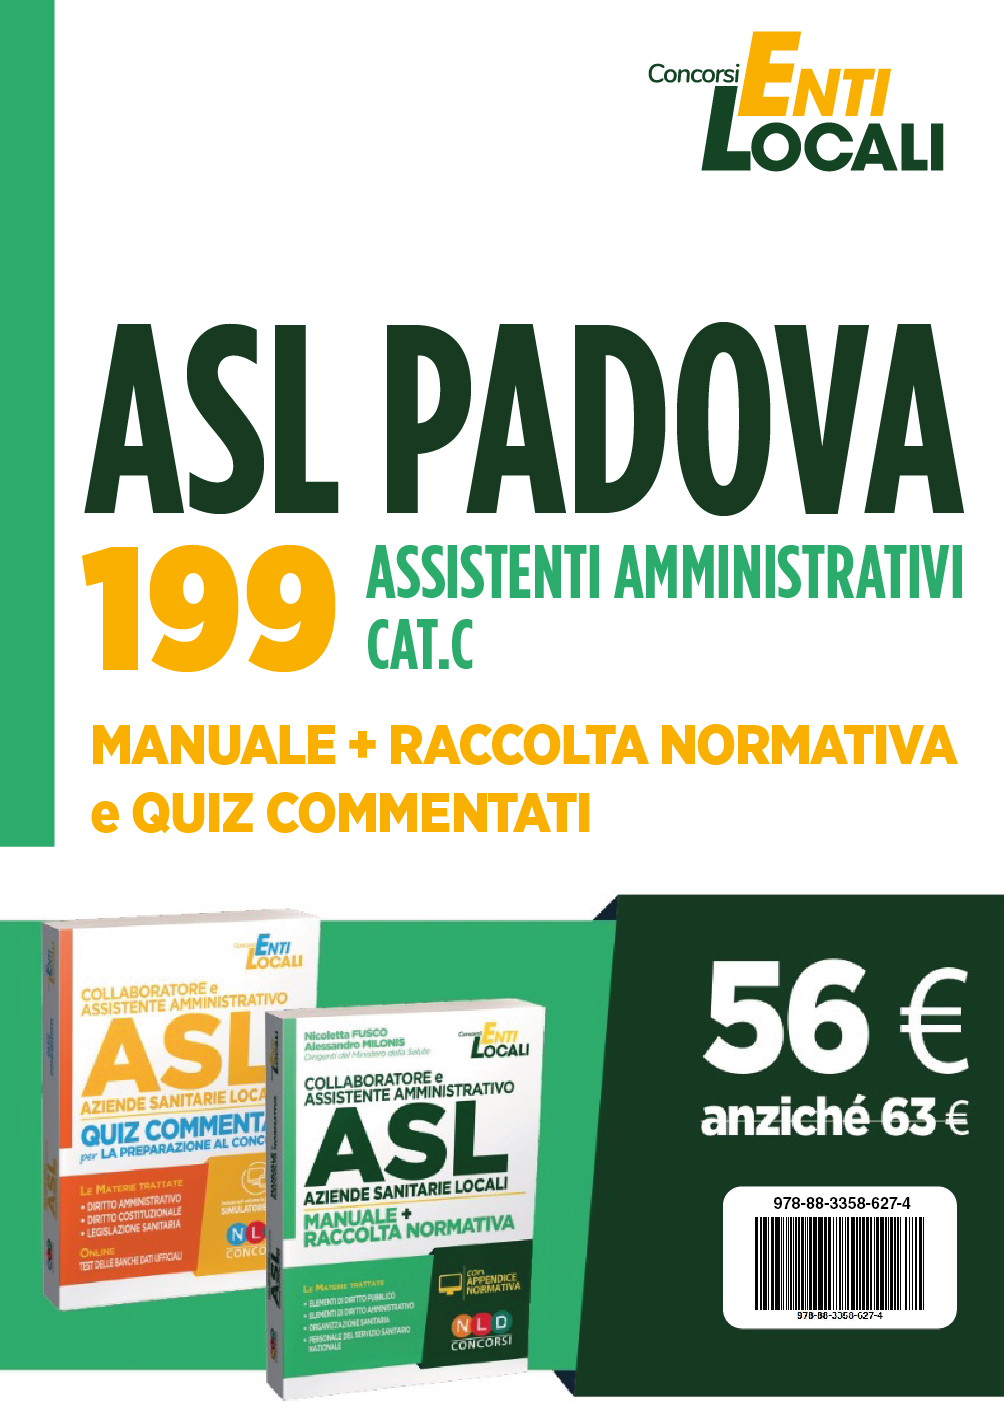 Concorso Asl Padova: Kit Completo per Concorso ASL PADOVA per 199 ASSISTENTI AMMINISTRATIVI